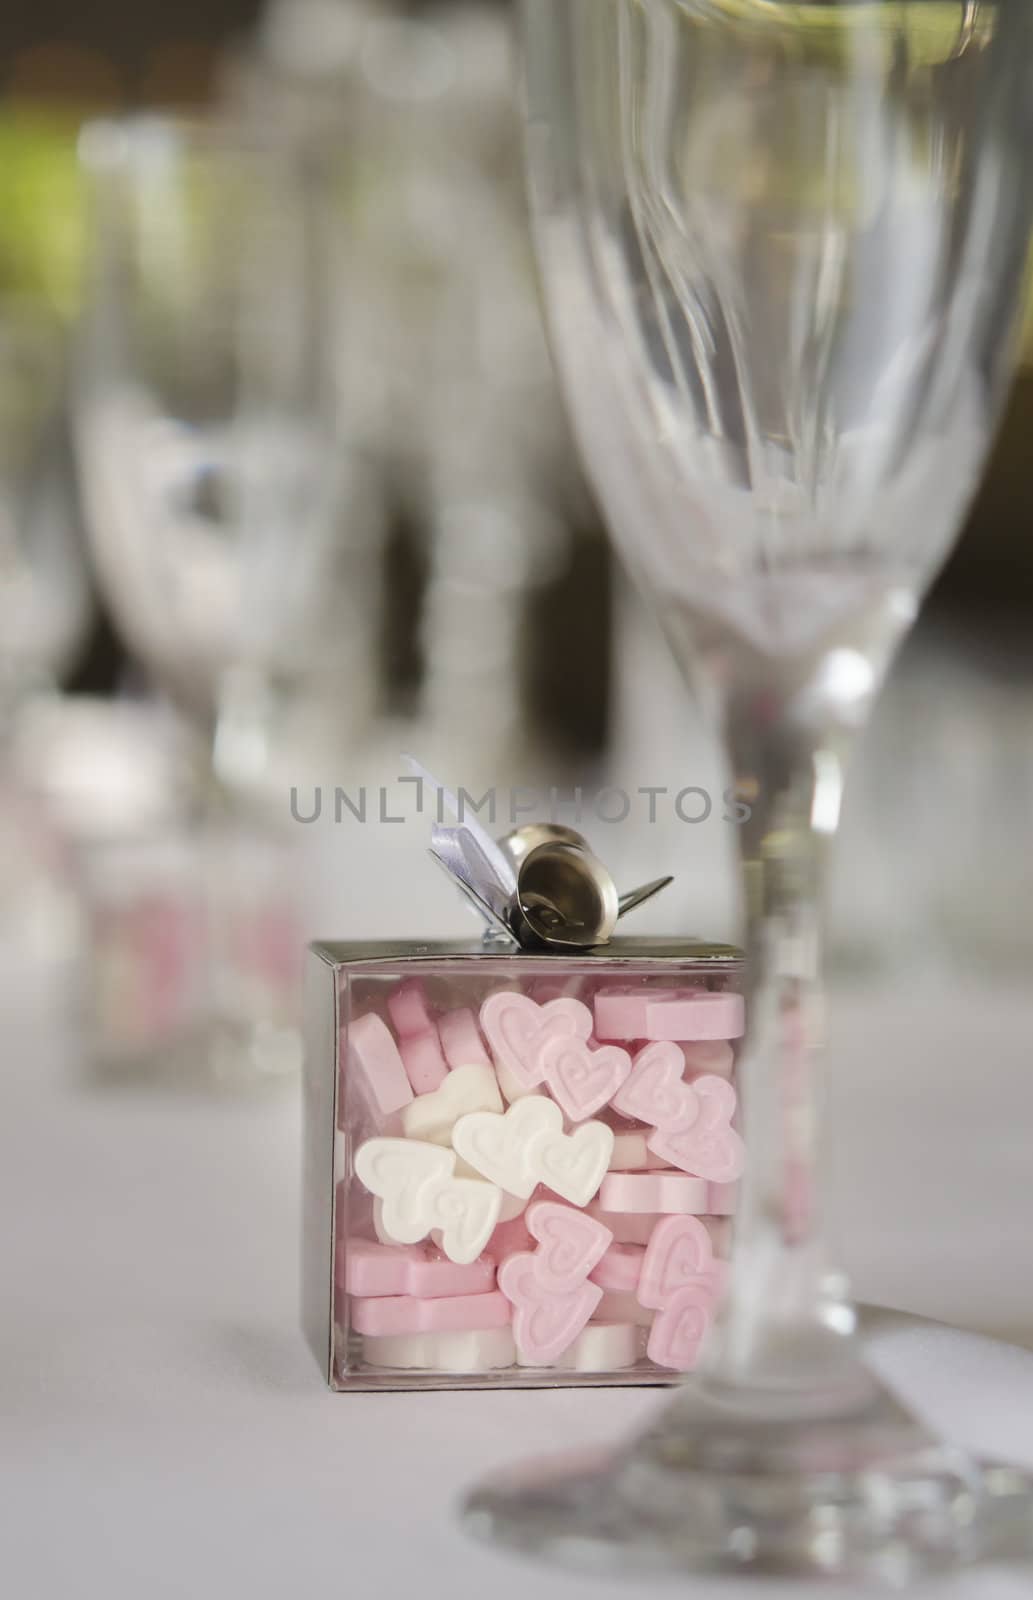 Wedding table setting by Paulmatthewphoto